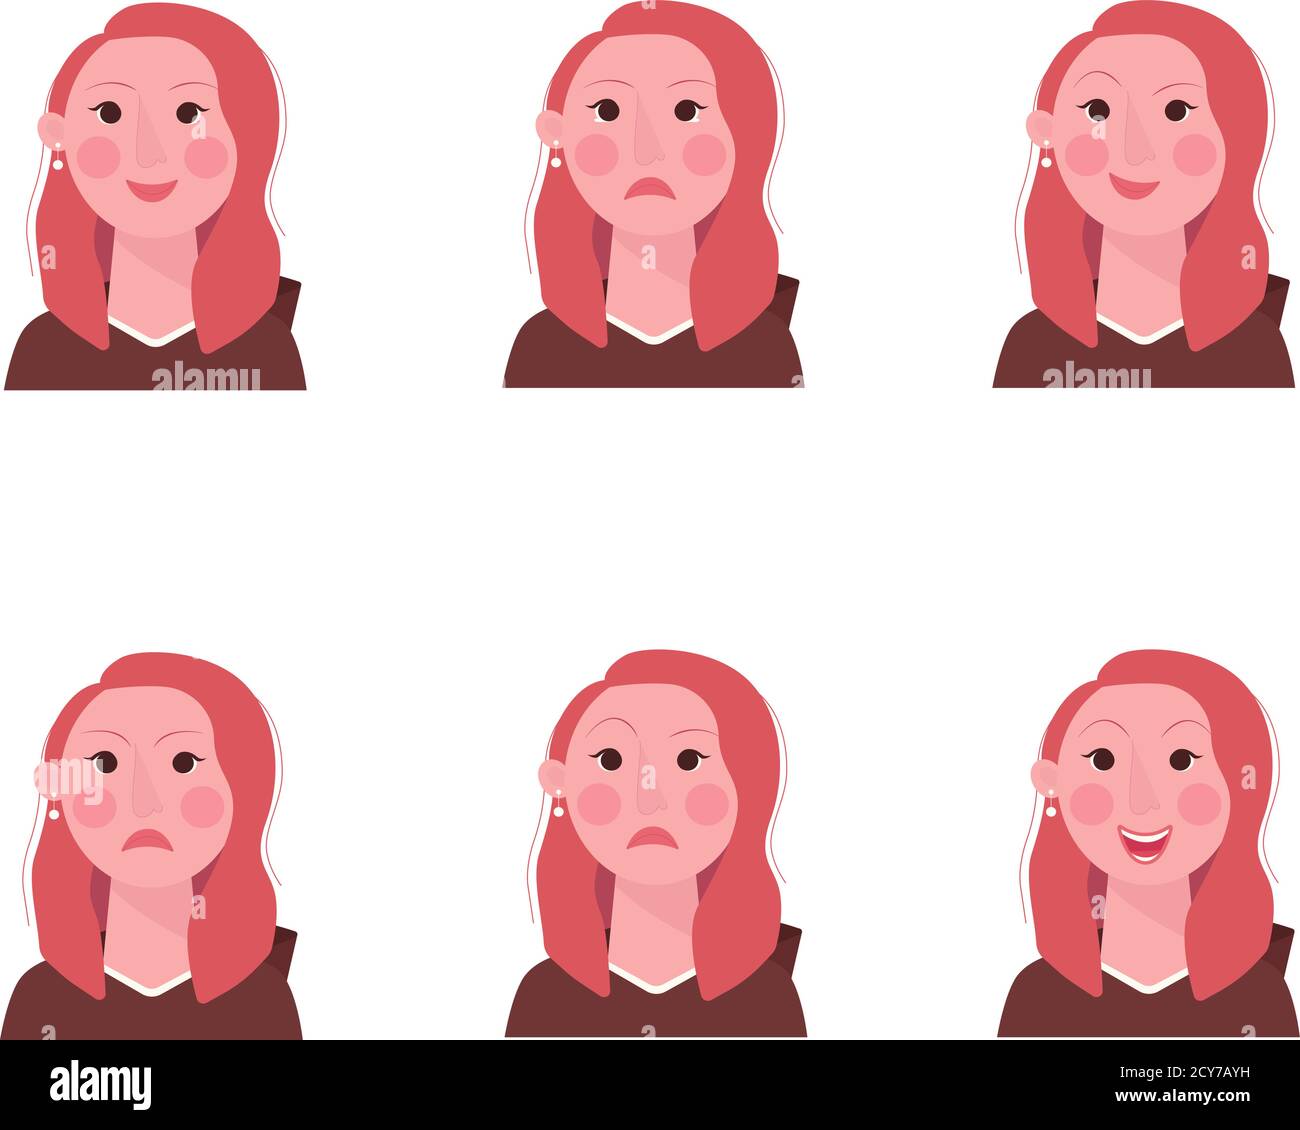 Ensemble de 6 émoticônes pour filles, visages de femmes de dessin animé simples et expressifs. Style moderne vectoriel plat. Illustration de Vecteur